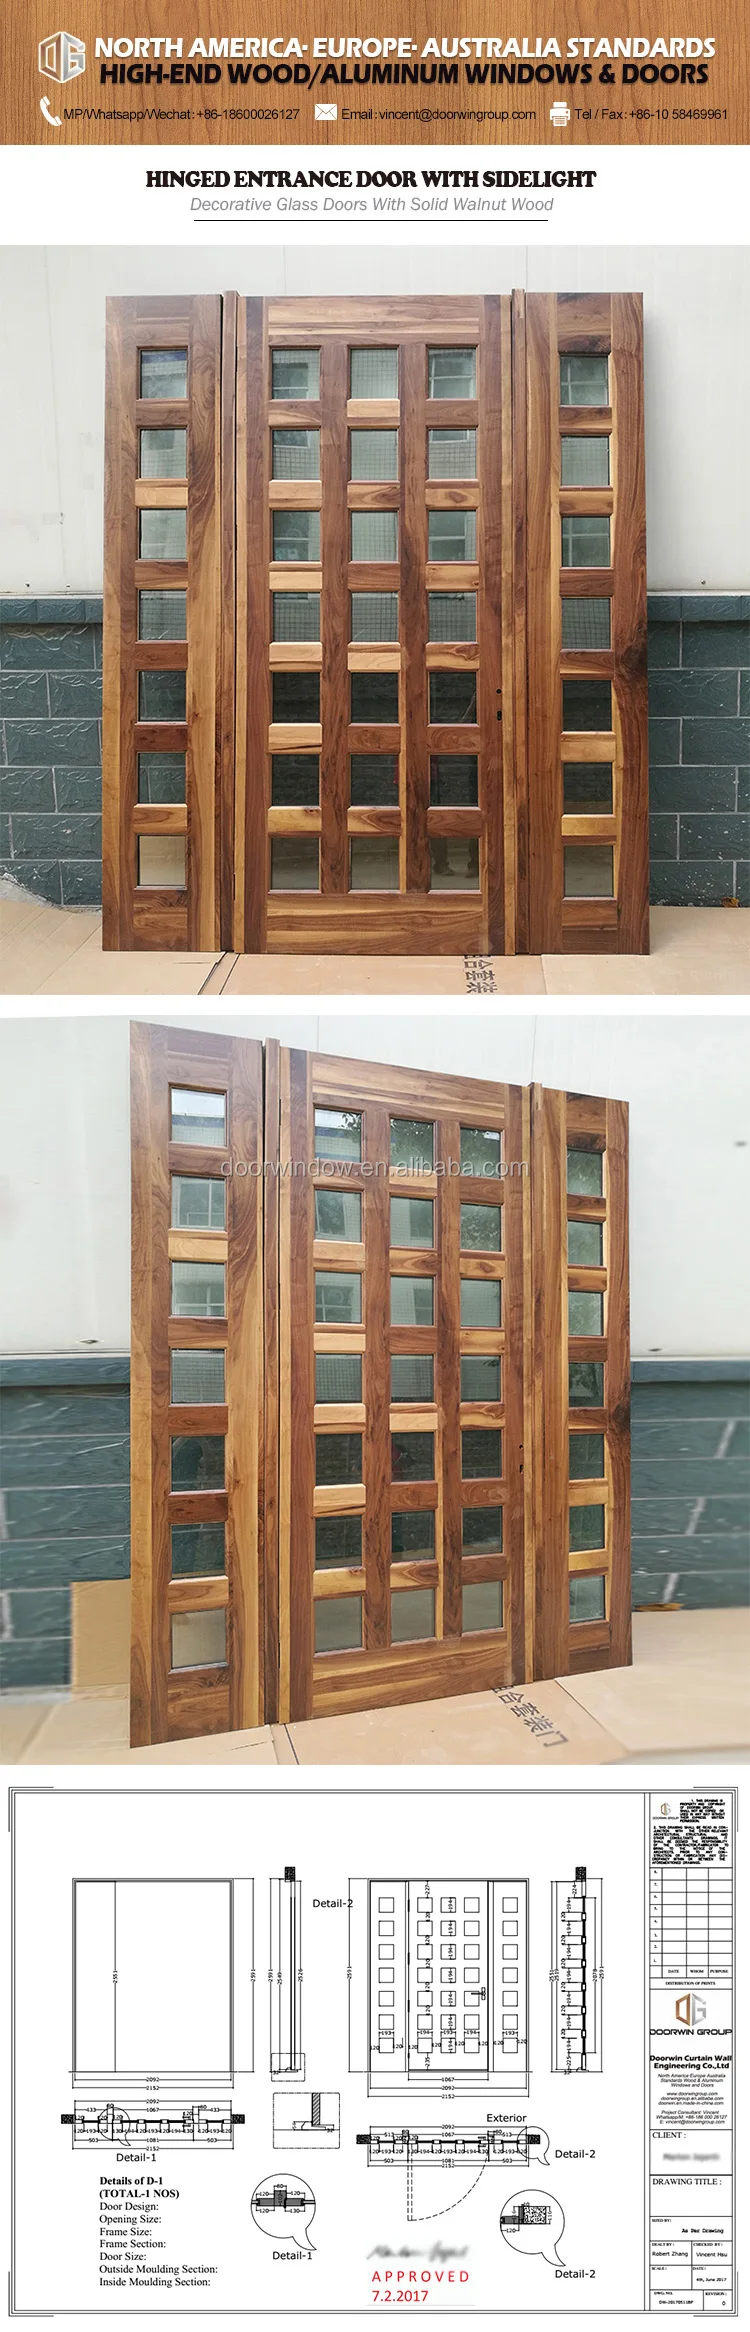 Latest design wooden doors wood door pictures yellow color panel door in alibaba